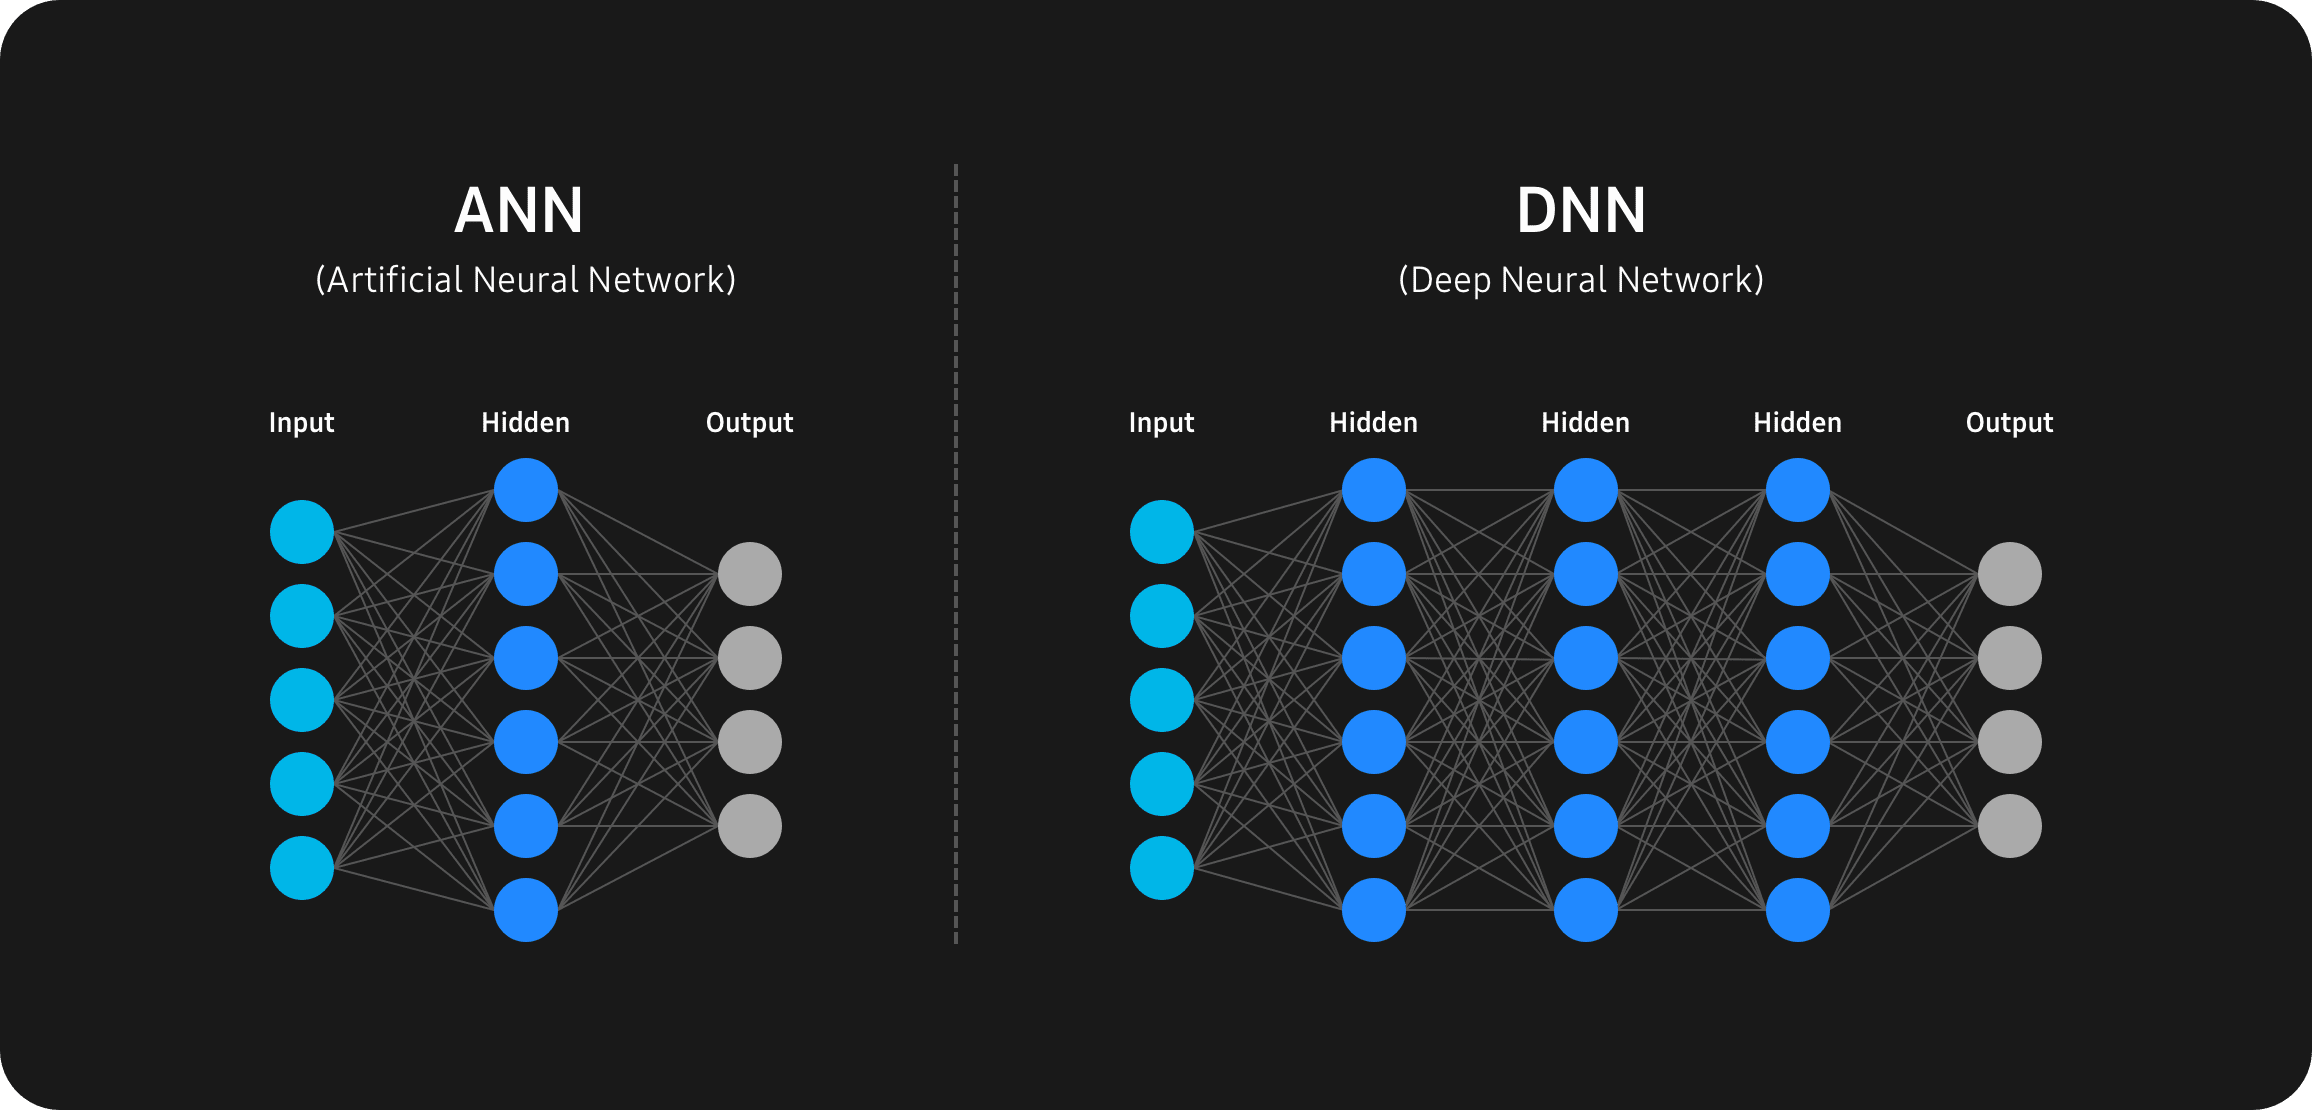 人工神经网络(ANN)和深度神经网络(DNN)信息图。人工神经网络(ANN)由相互连接的算法层组成，深度神经网络(DNN)在输入和输出之间包含多个层。